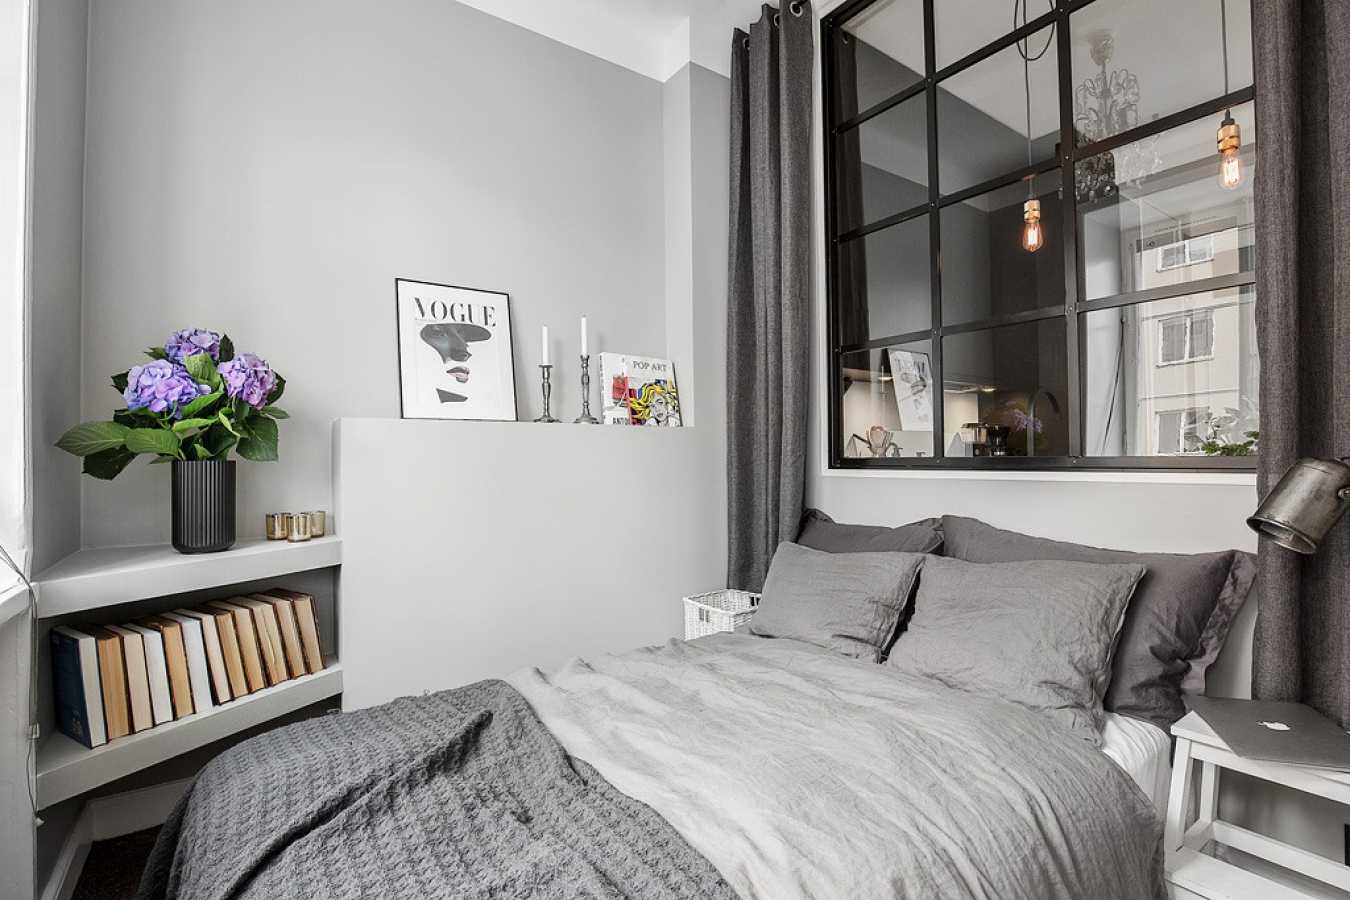 šviesiai pilkos spalvos miegamojo stiliaus derinys